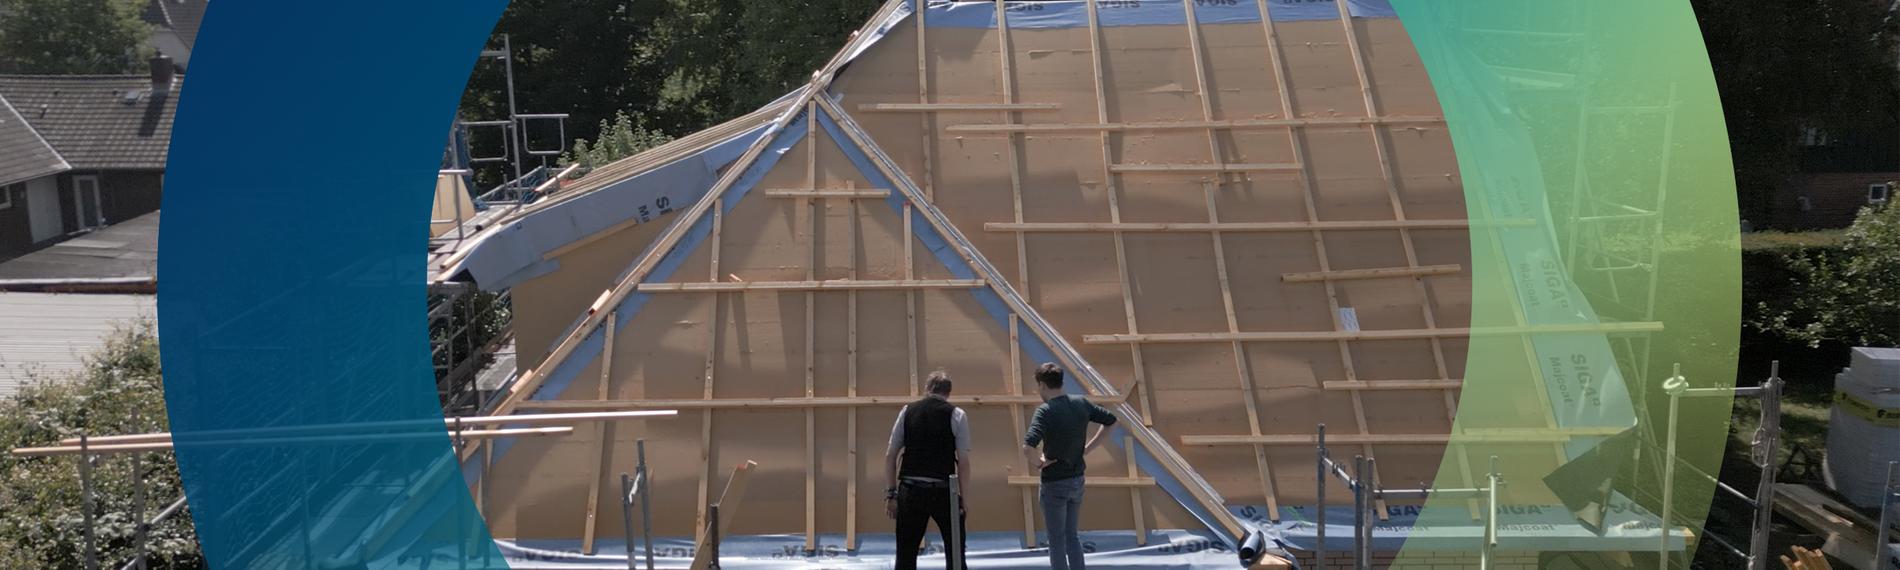 Sanierung eines Hausdaches